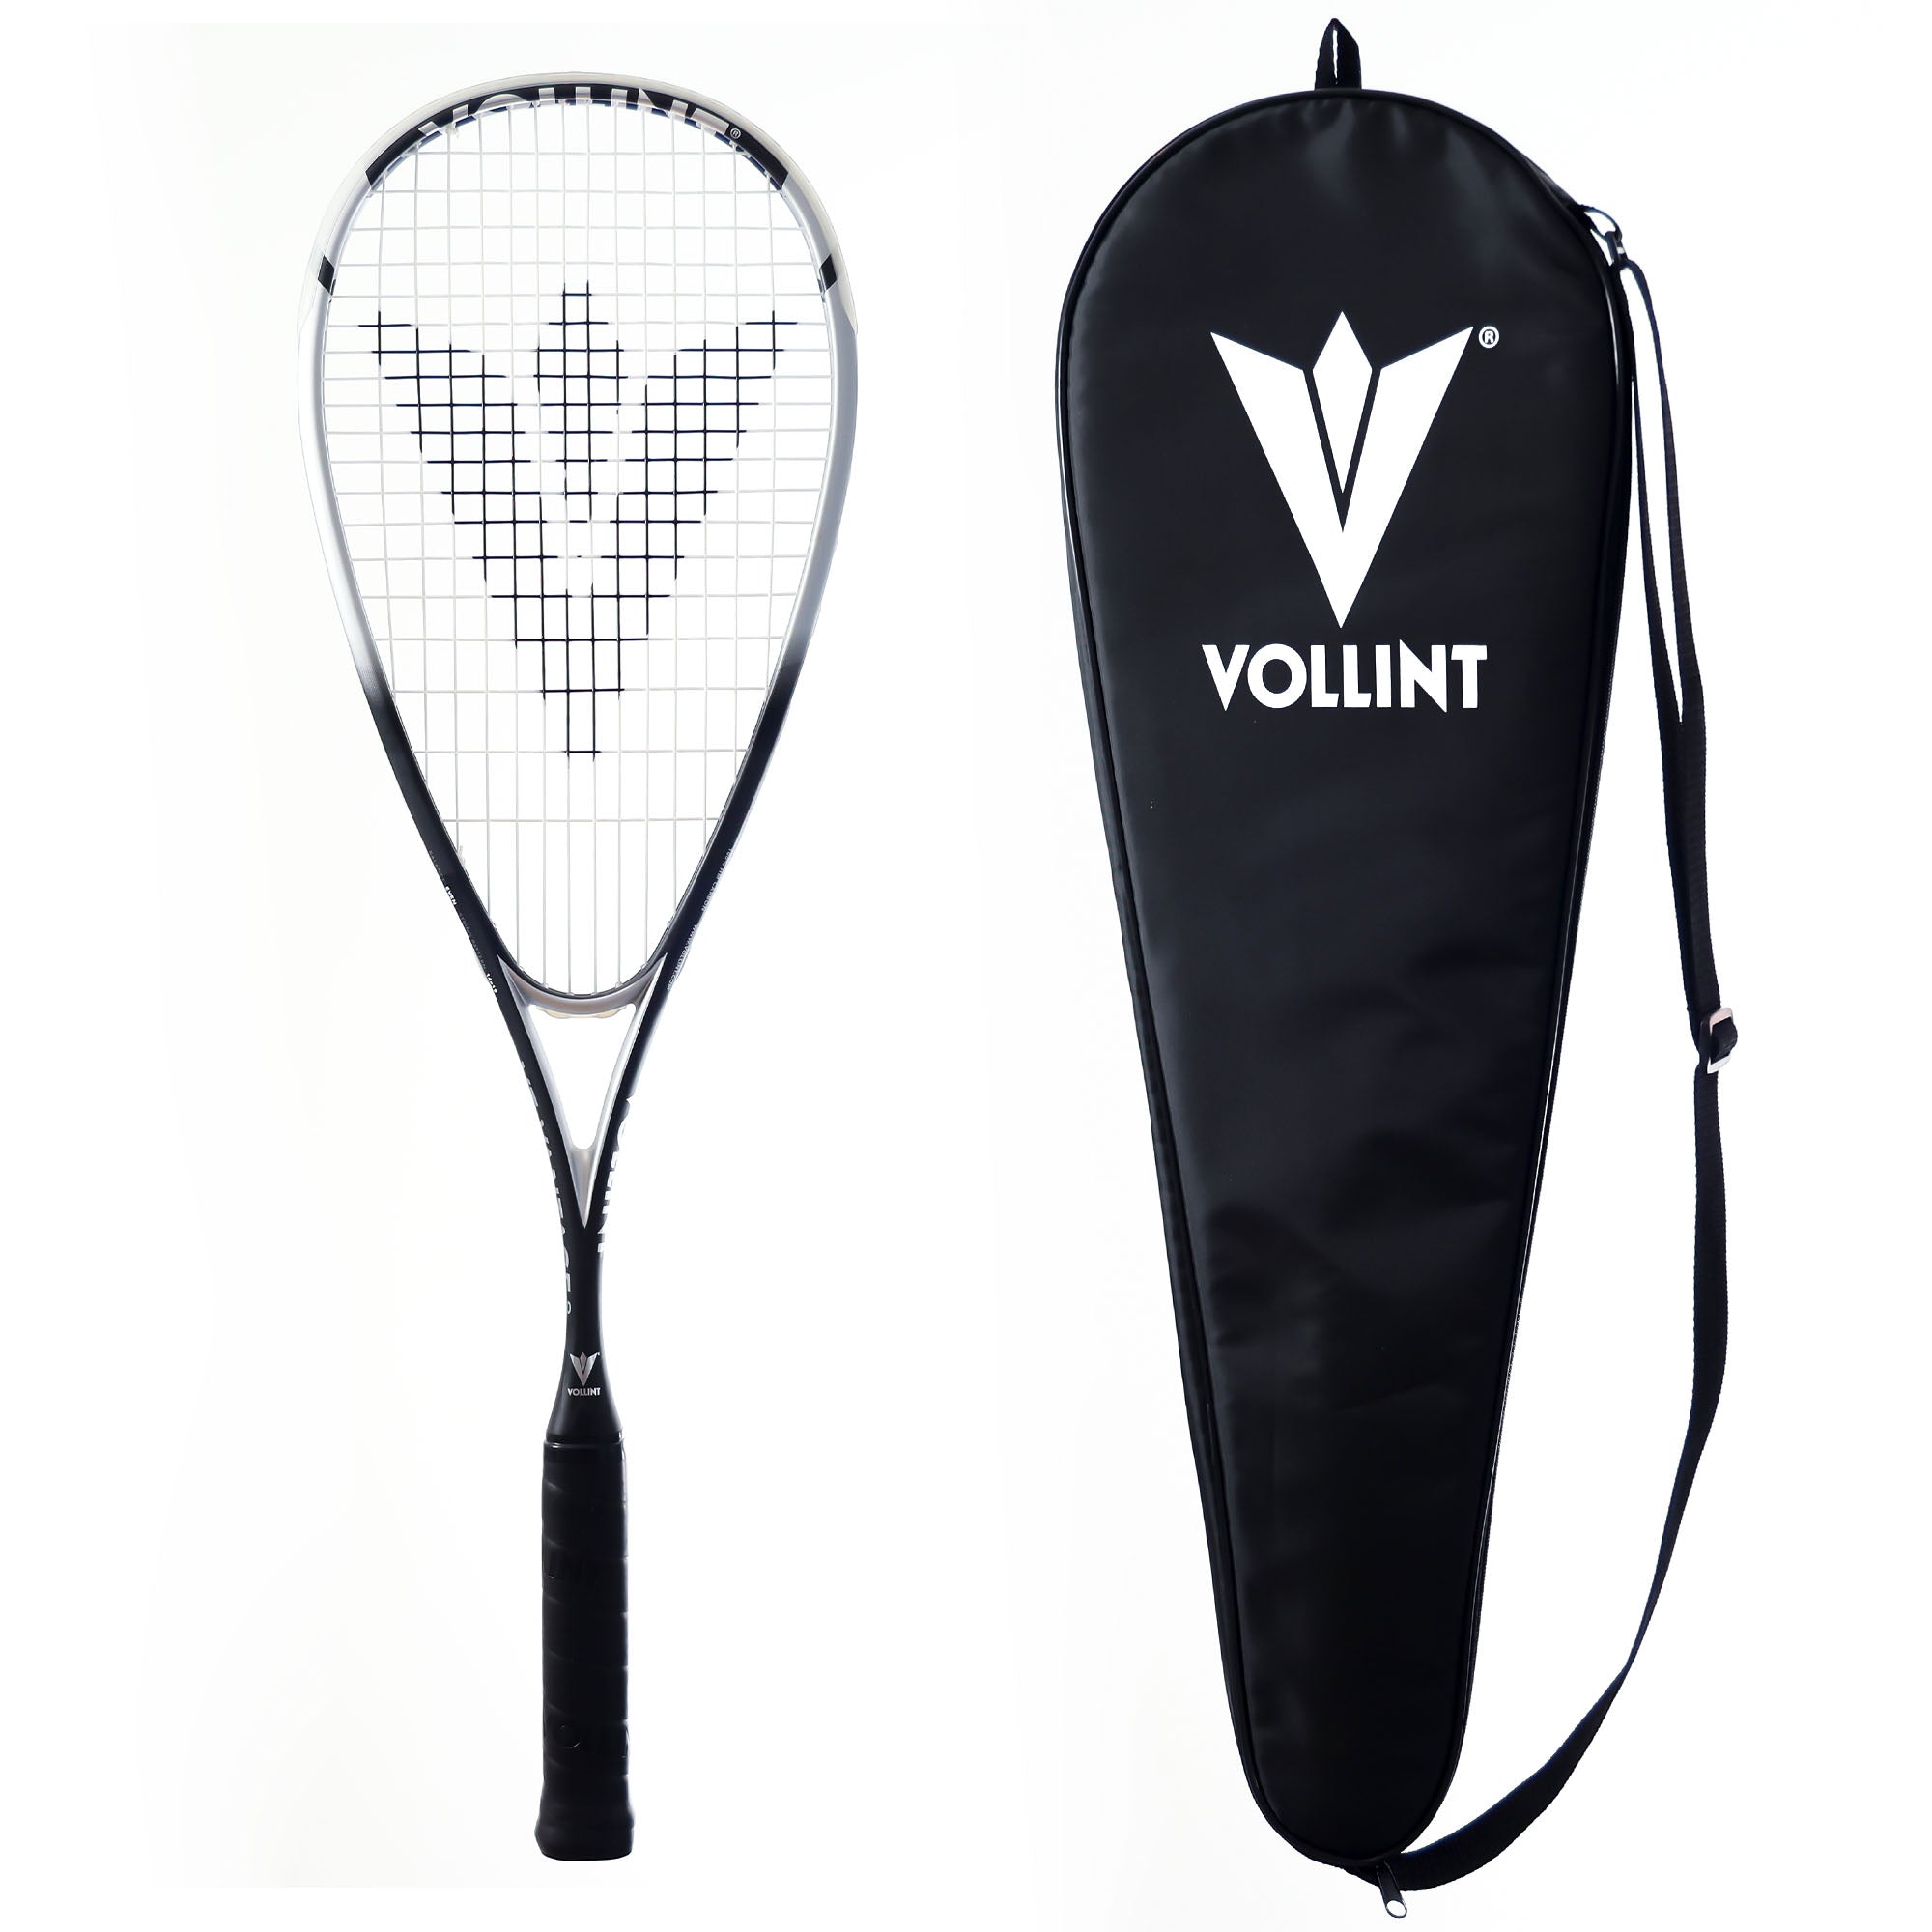 Vollint VT-Vantage 120 Squash Racket from Sweatband.com